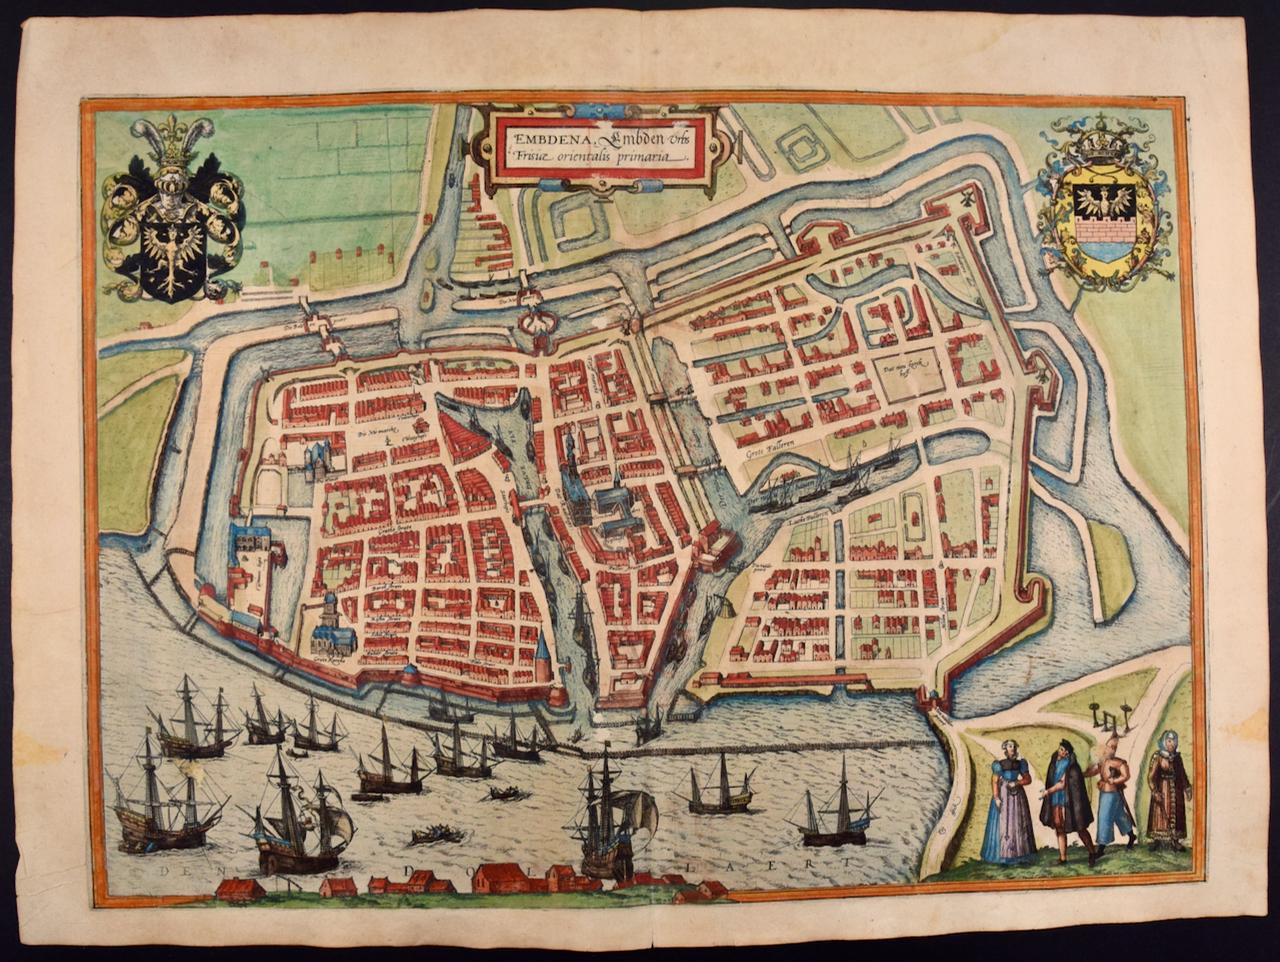 Landscape Print Frans Hogenberg -  View of Emden, Allemagne : une carte du 16e siècle colorée à la main par Braun & Hogenberg